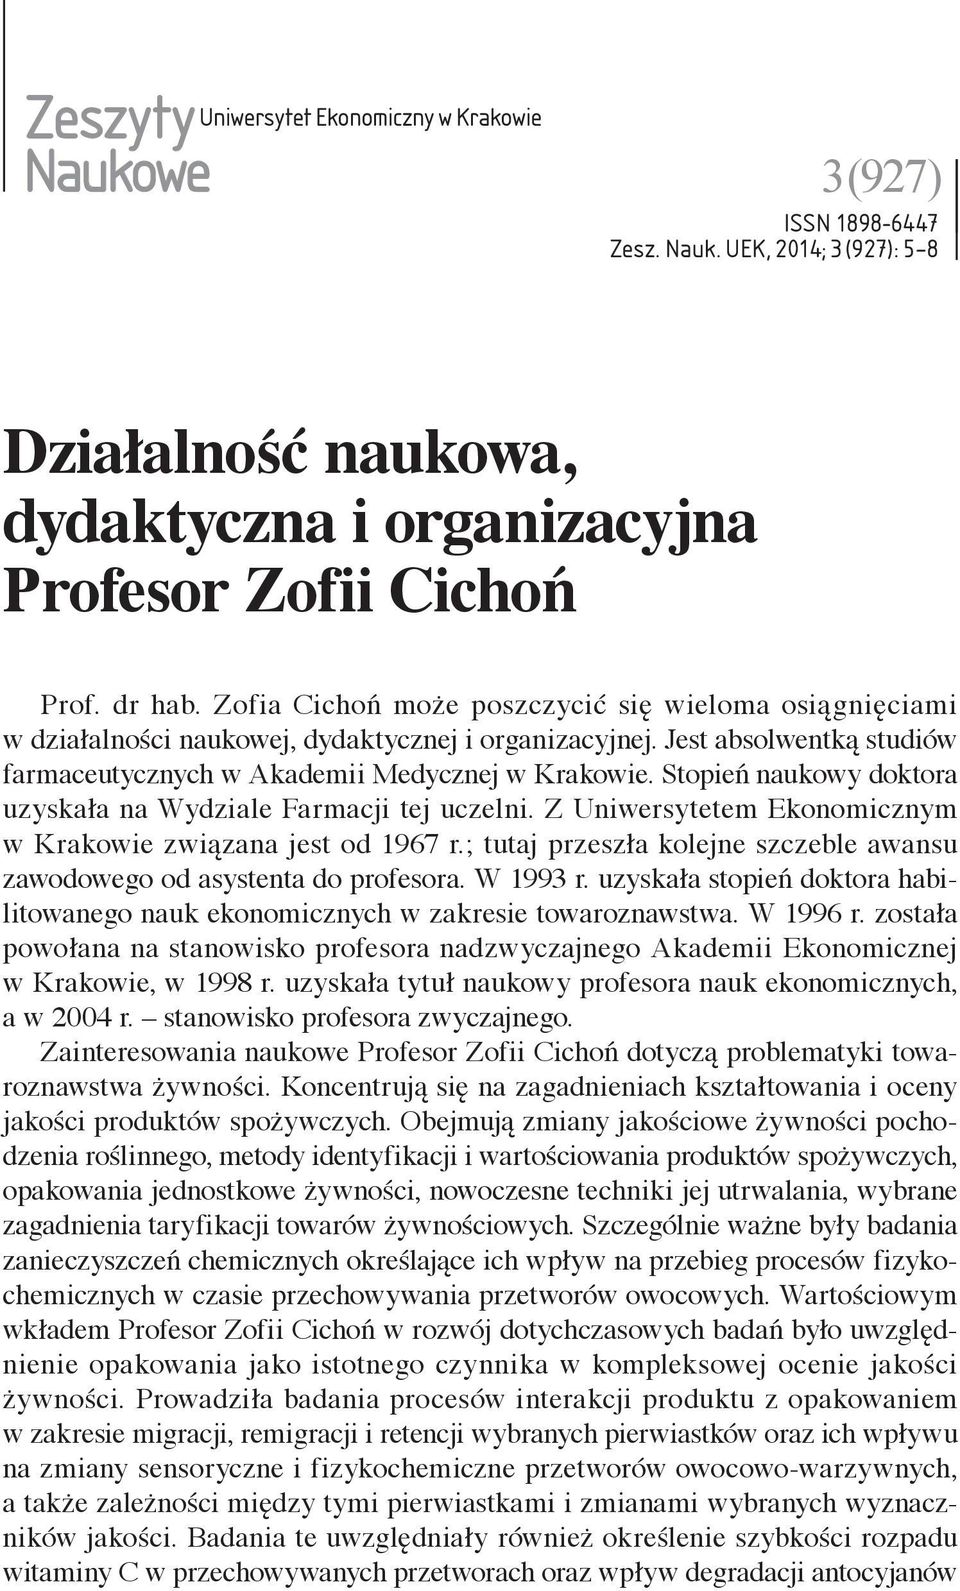 Stopień naukowy doktora uzyskała na Wydziale Farmacji tej uczelni. Z Uniwersytetem Ekonomicznym w Krakowie związana jest od 1967 r.